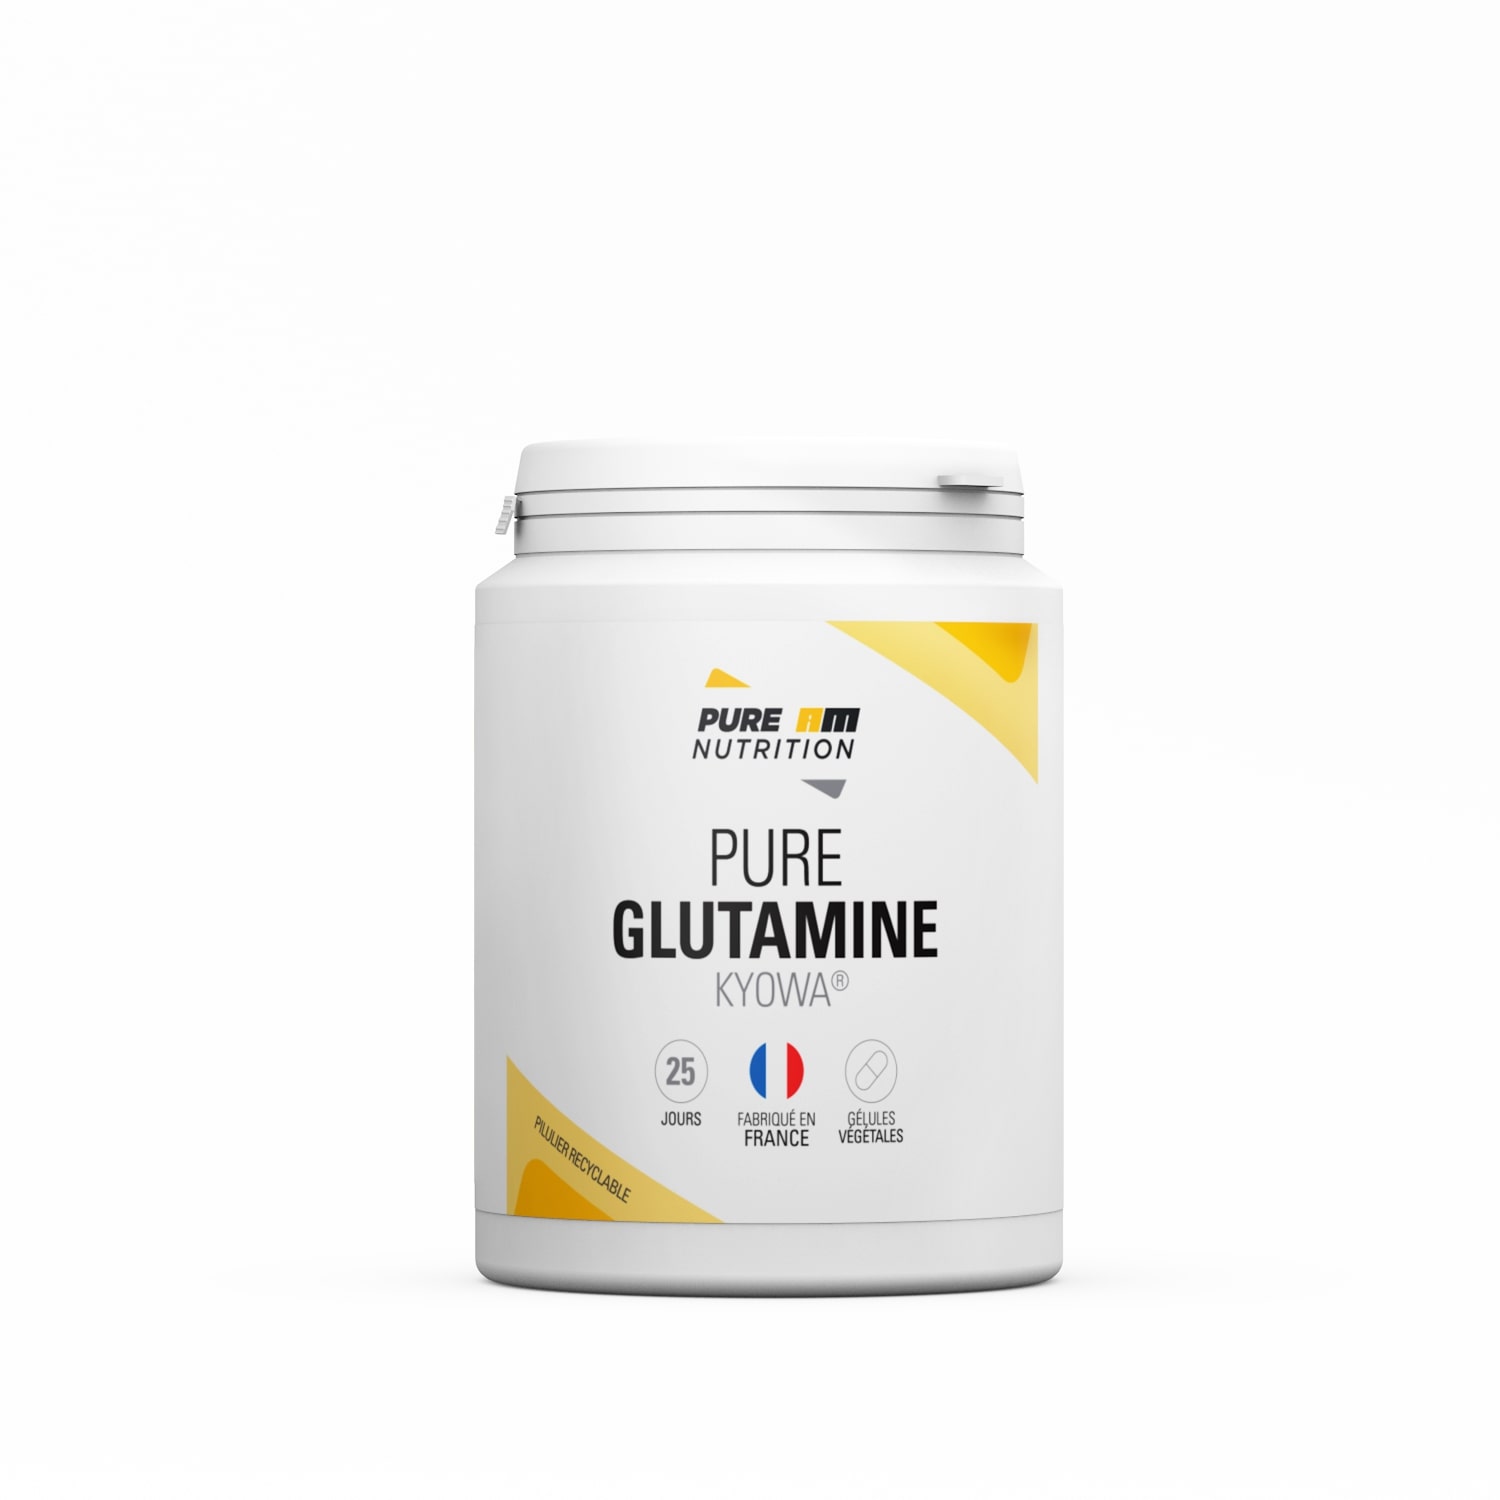  Pure AM Nutrition PURE Glutamine Kyowa®